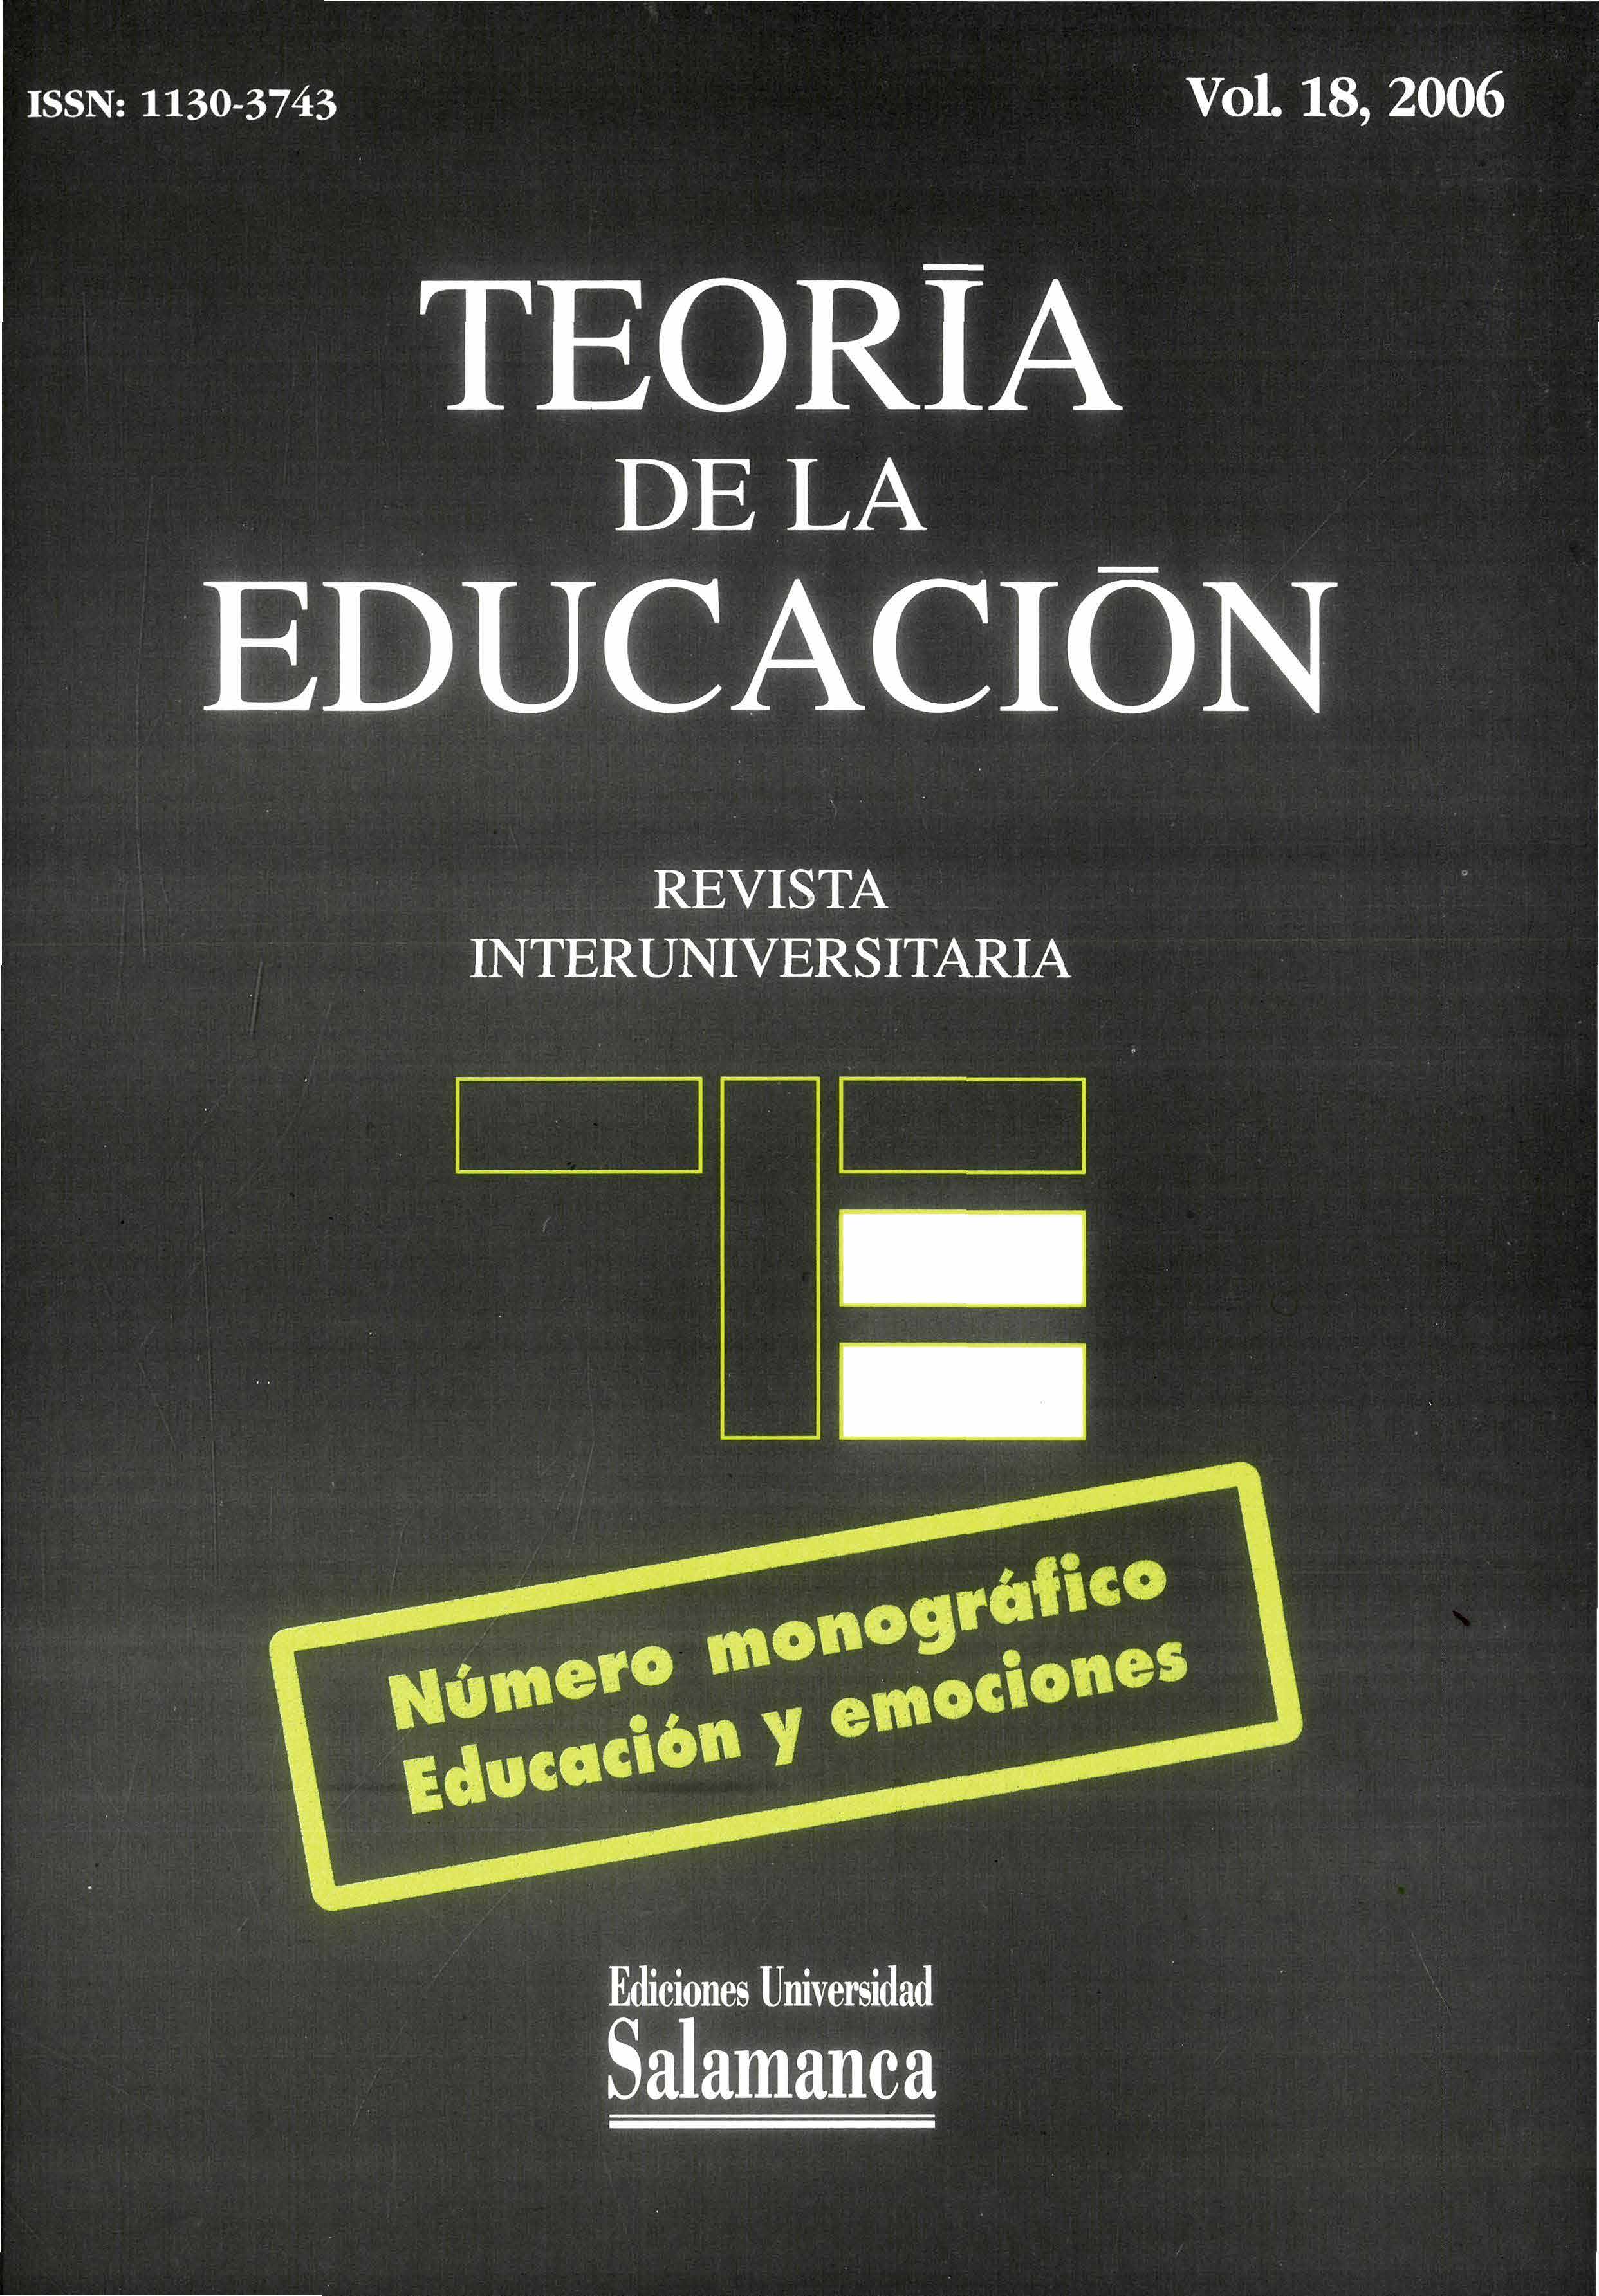                         Ver Vol. 18 (2006): Educación y emociones
                    